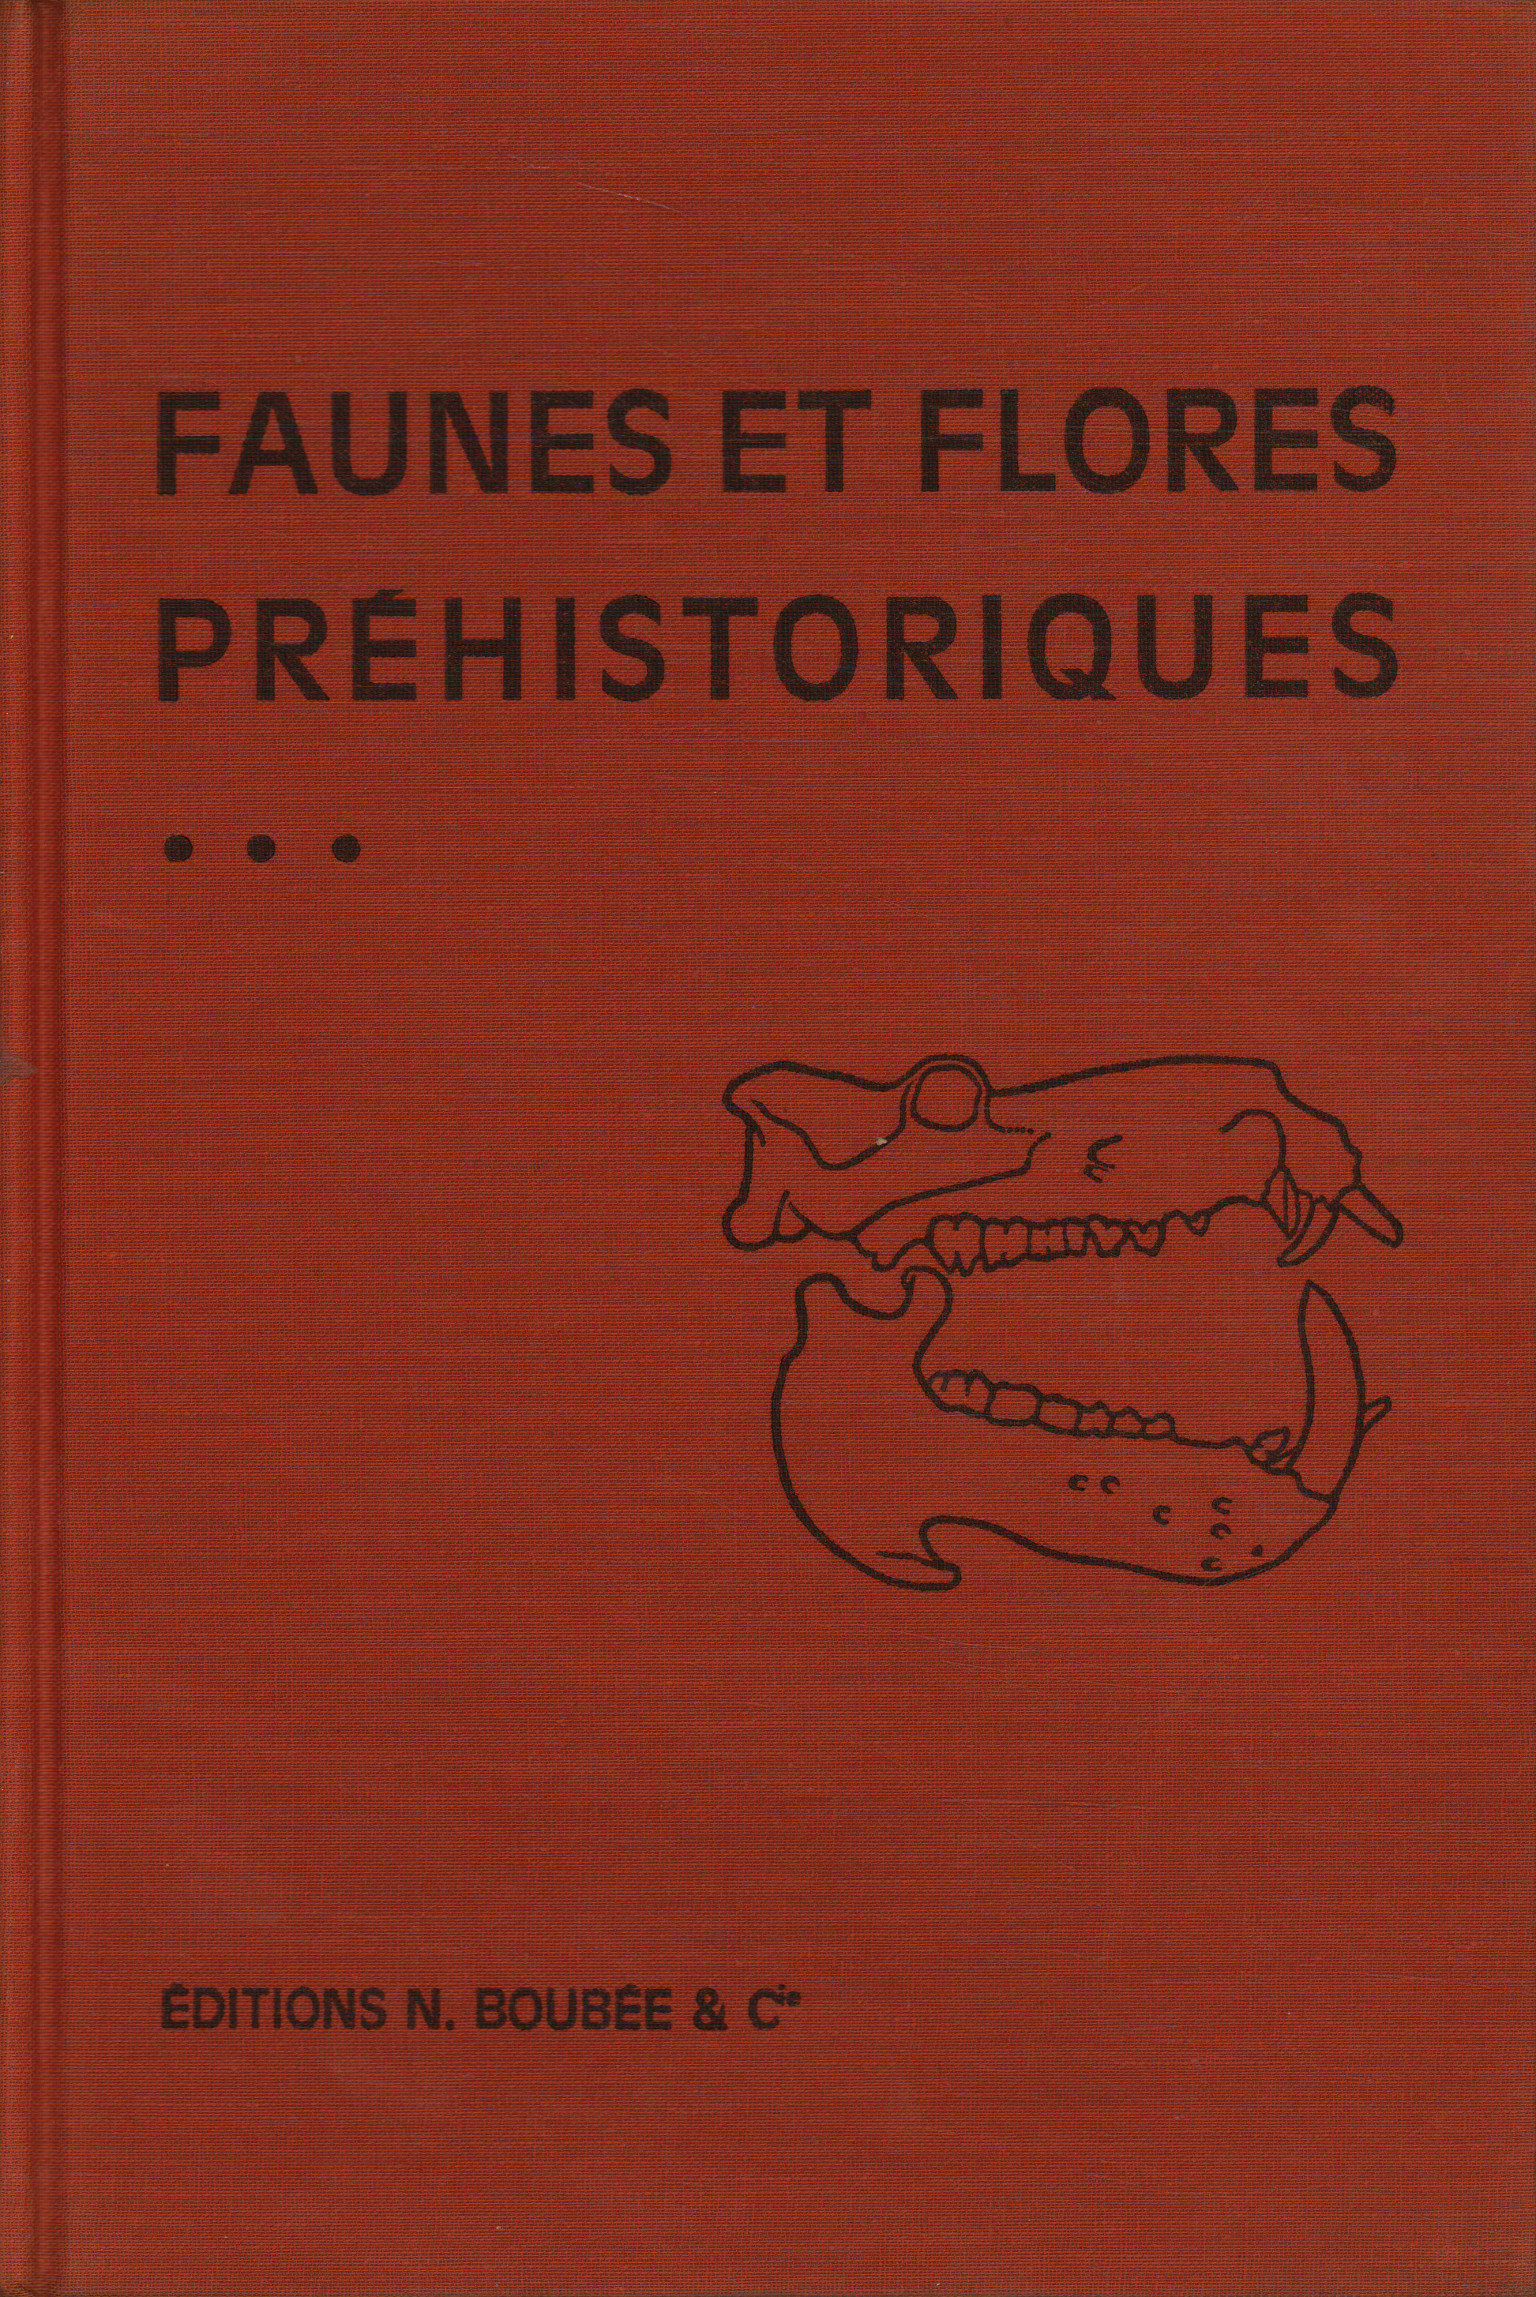 Faunes et Floras Préhistoriques de